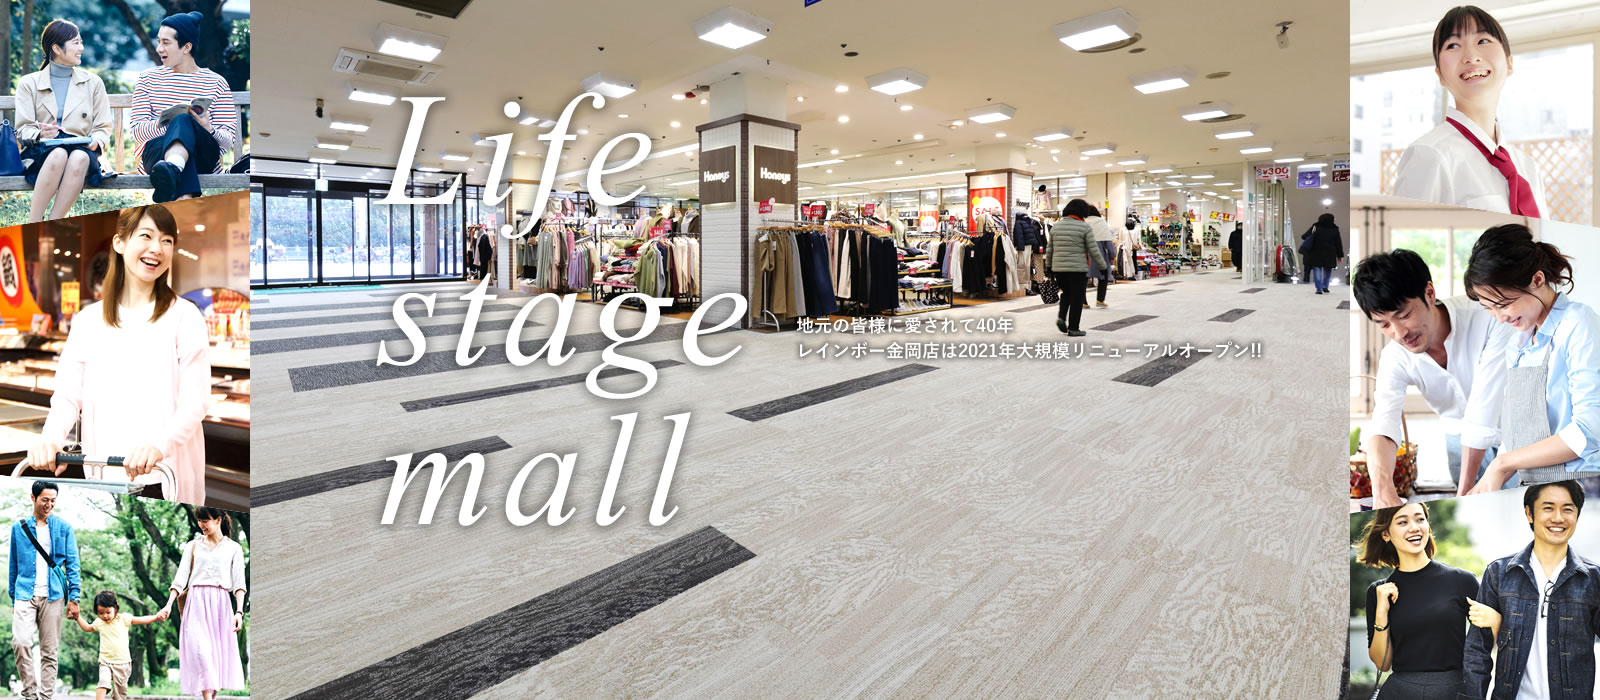 Life stage mall 地元の皆様に愛されて40年 レインボー金岡店は2021年大規模リニューアルオープン！！